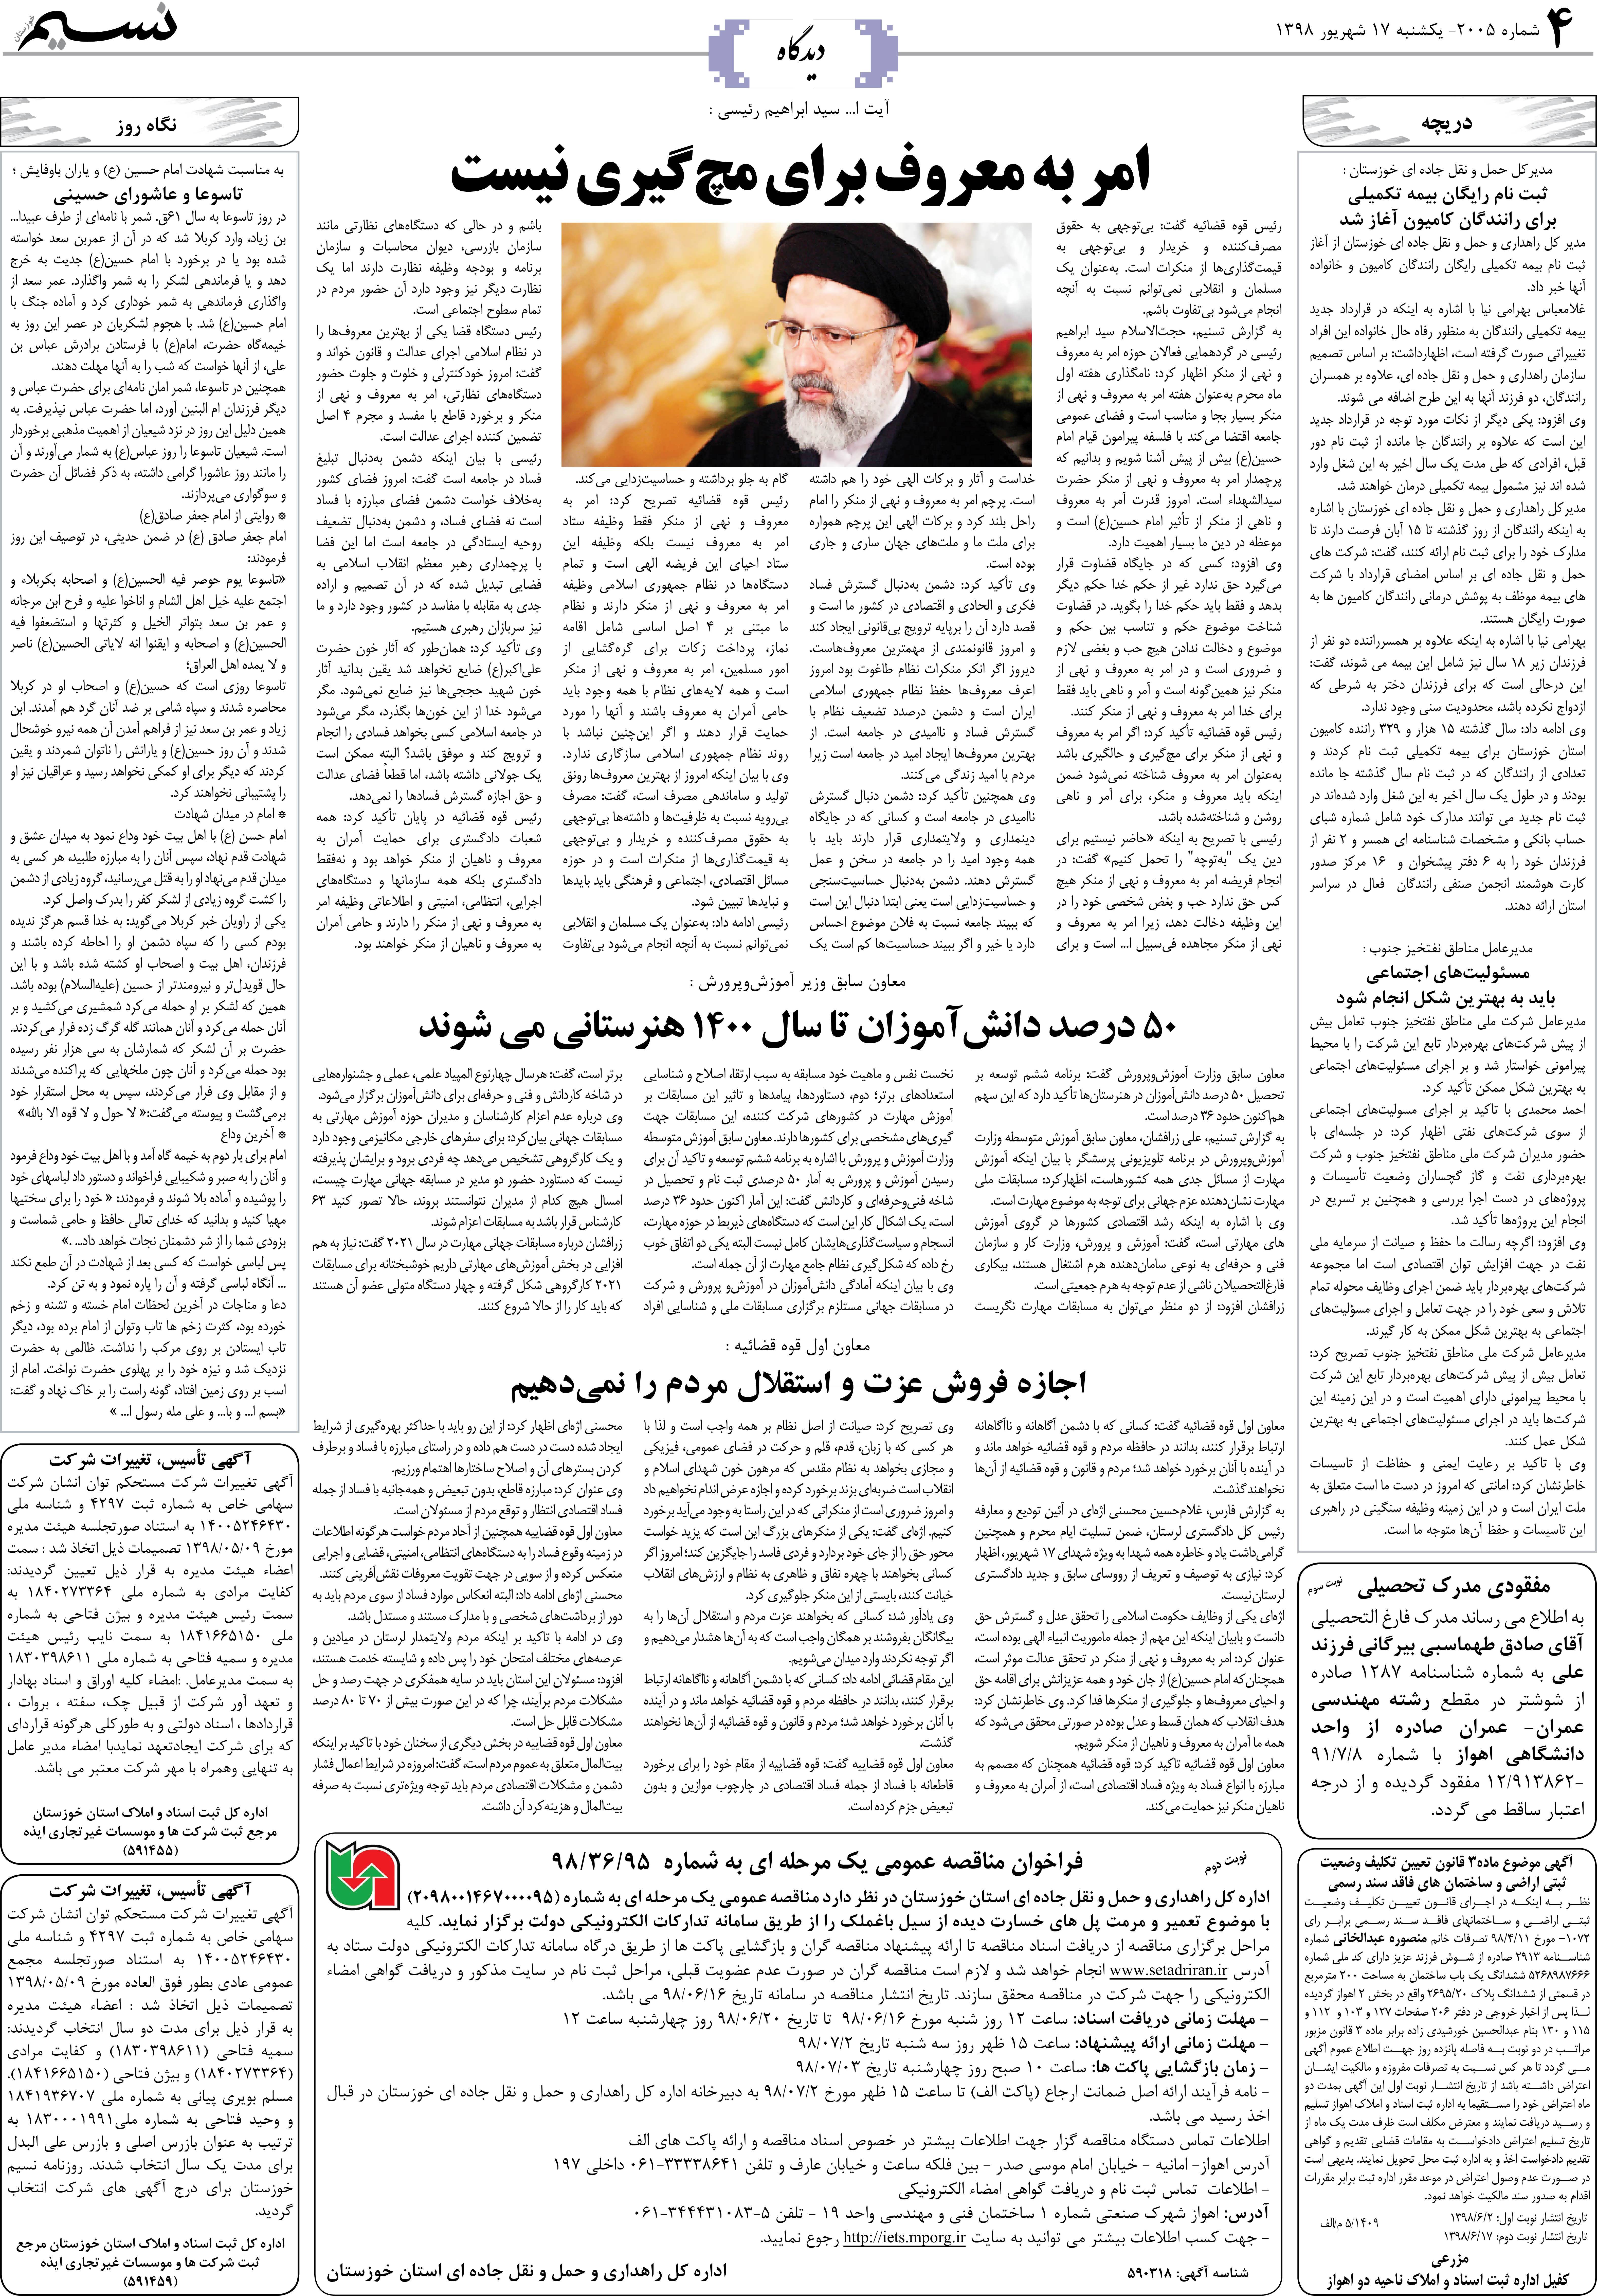 صفحه دیدگاه روزنامه نسیم شماره 2005